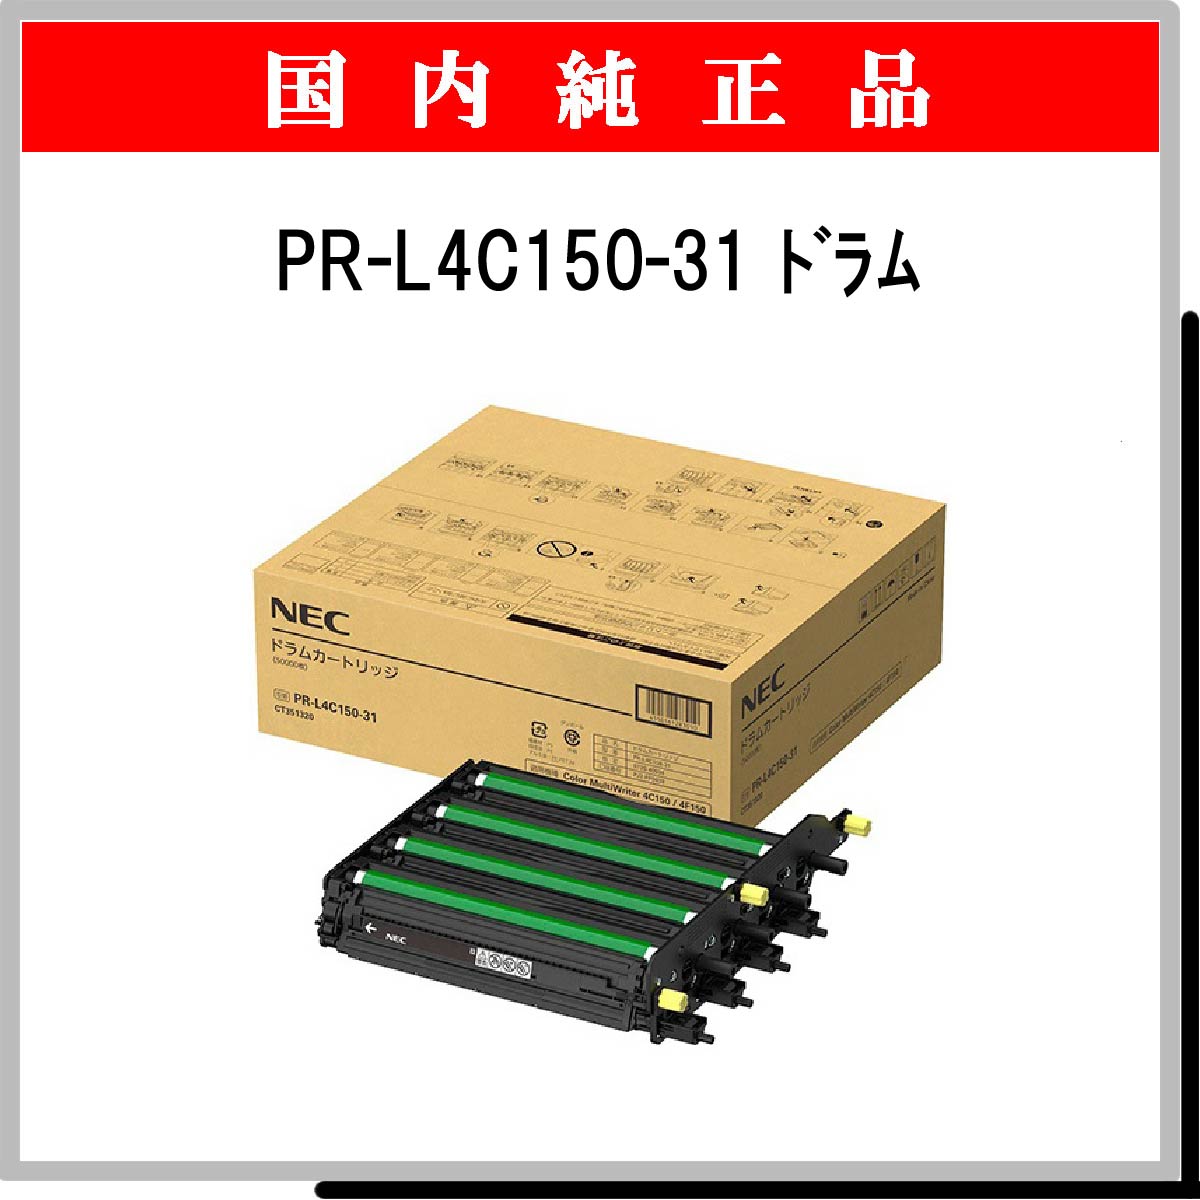 PR-L4C150-31 純正